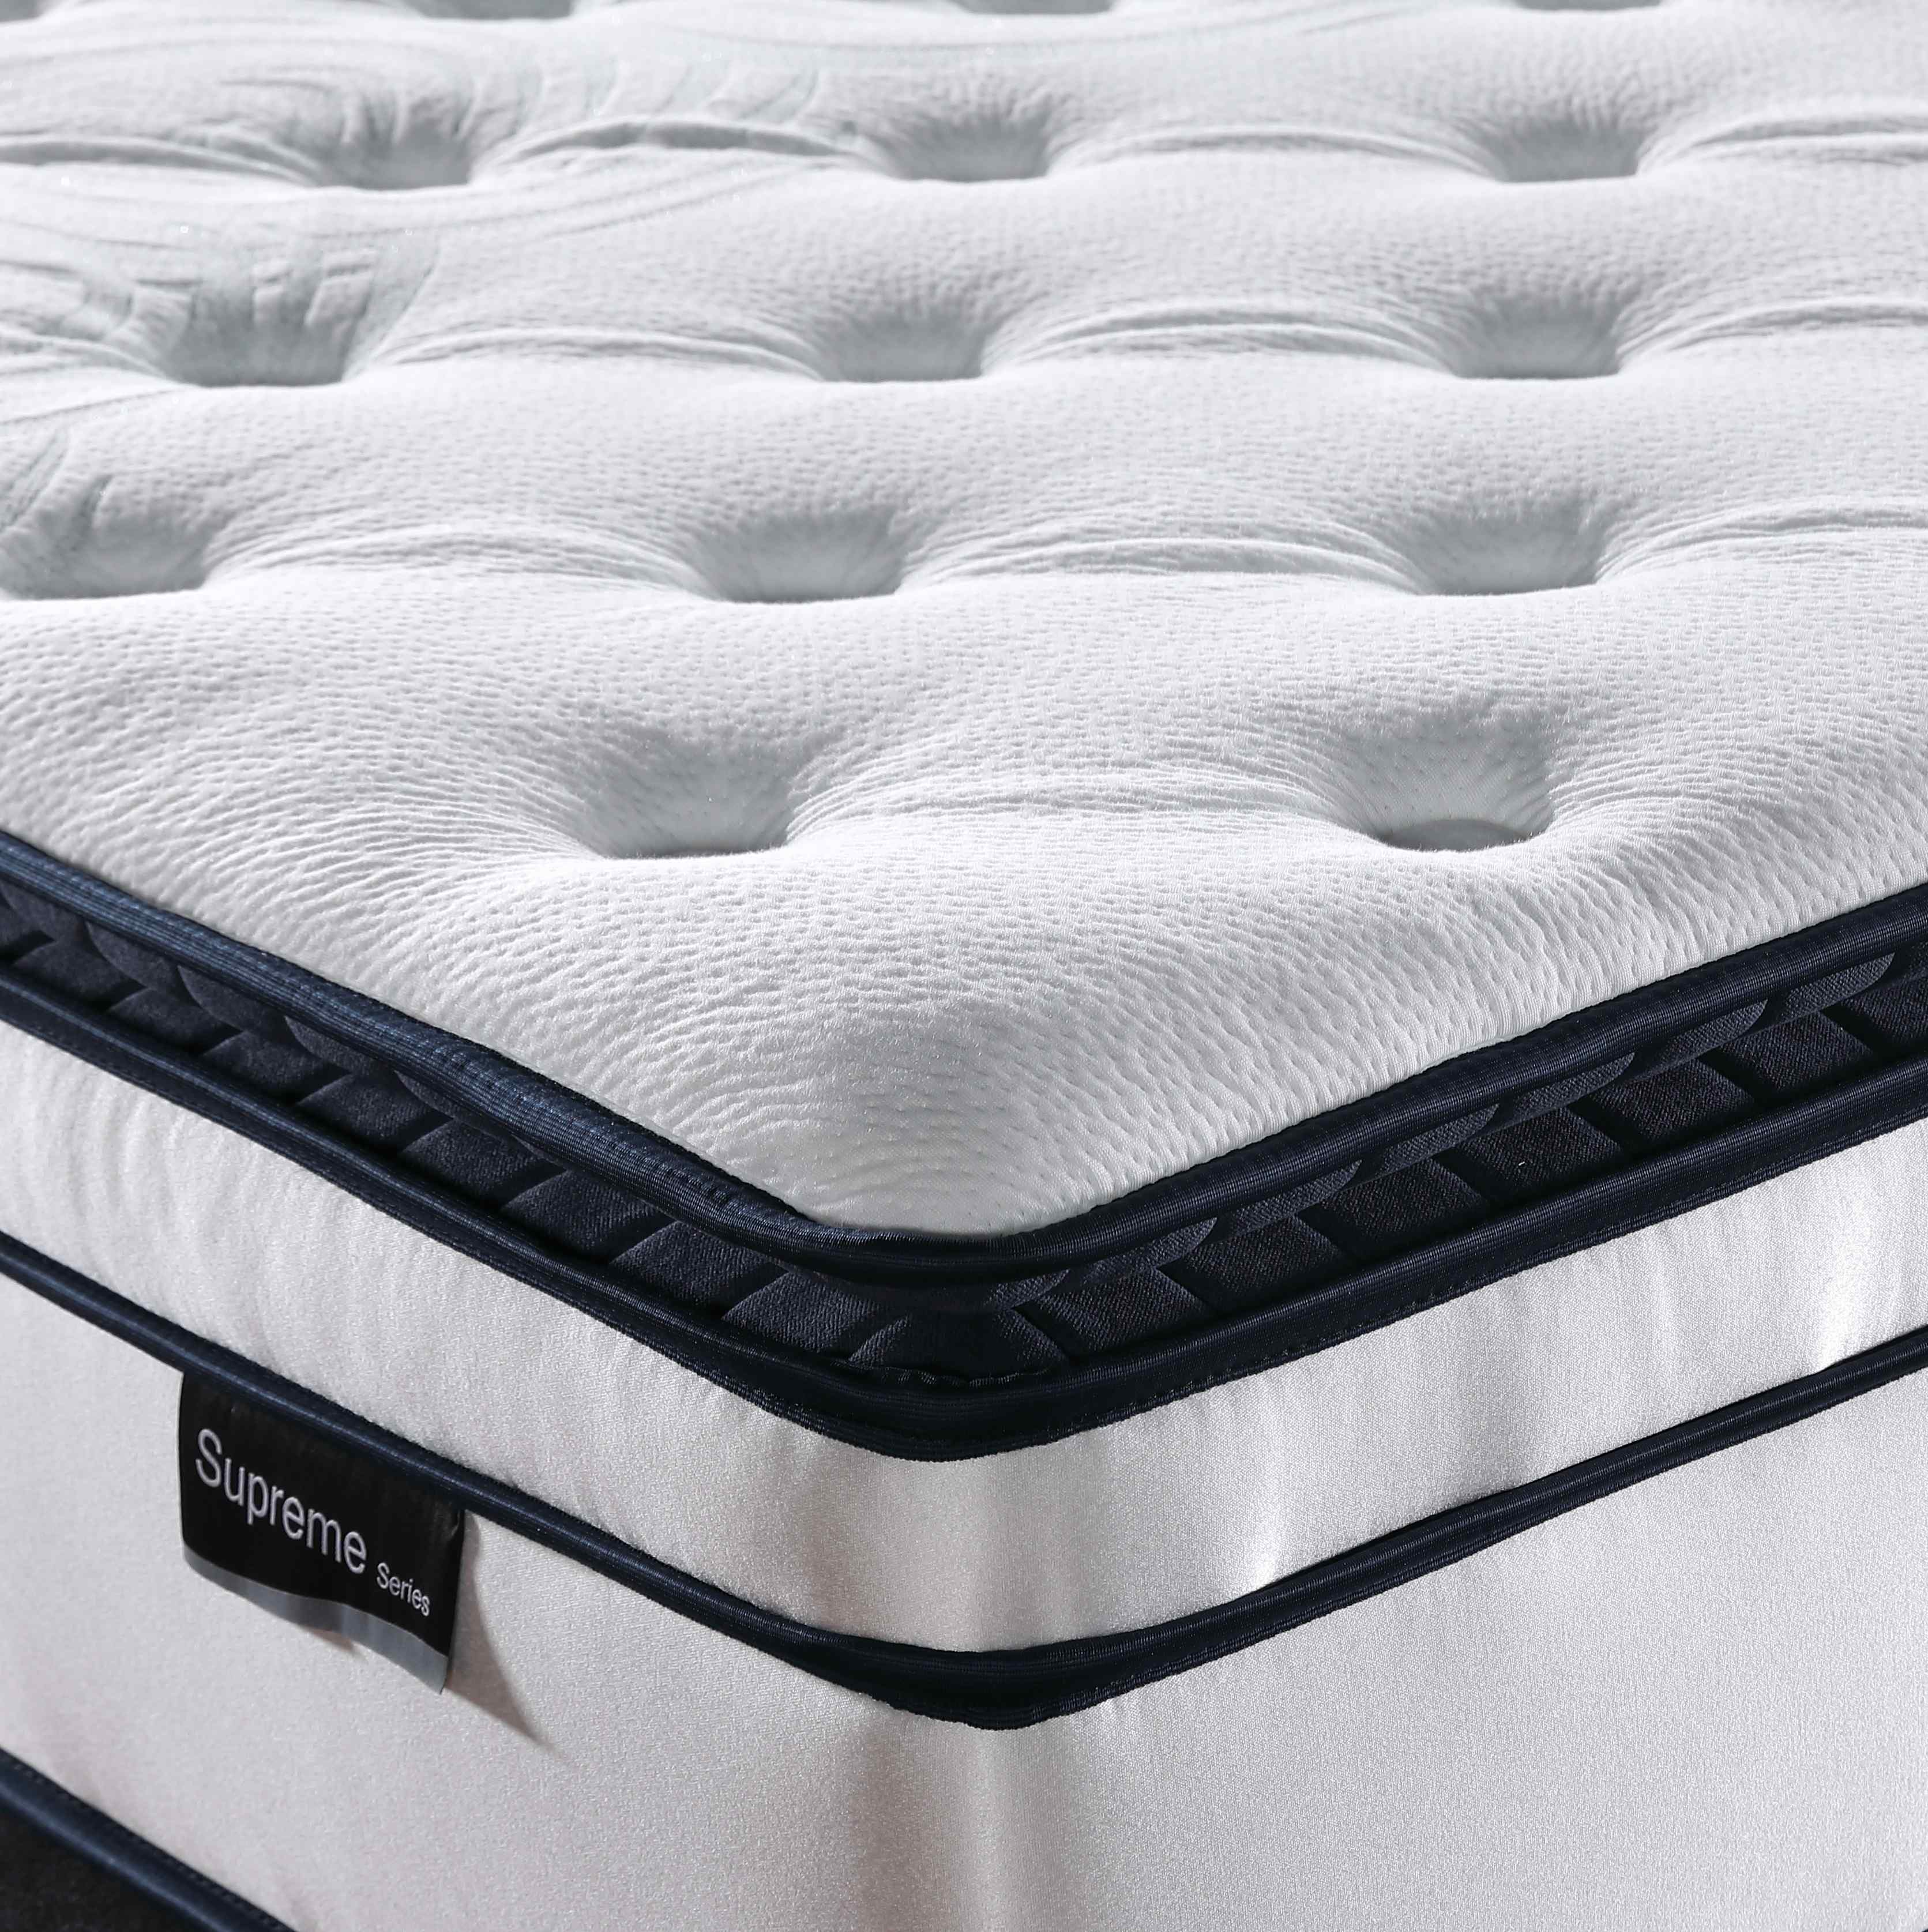 JLH popular memory foam pocket spring mattress Certified delivered easily